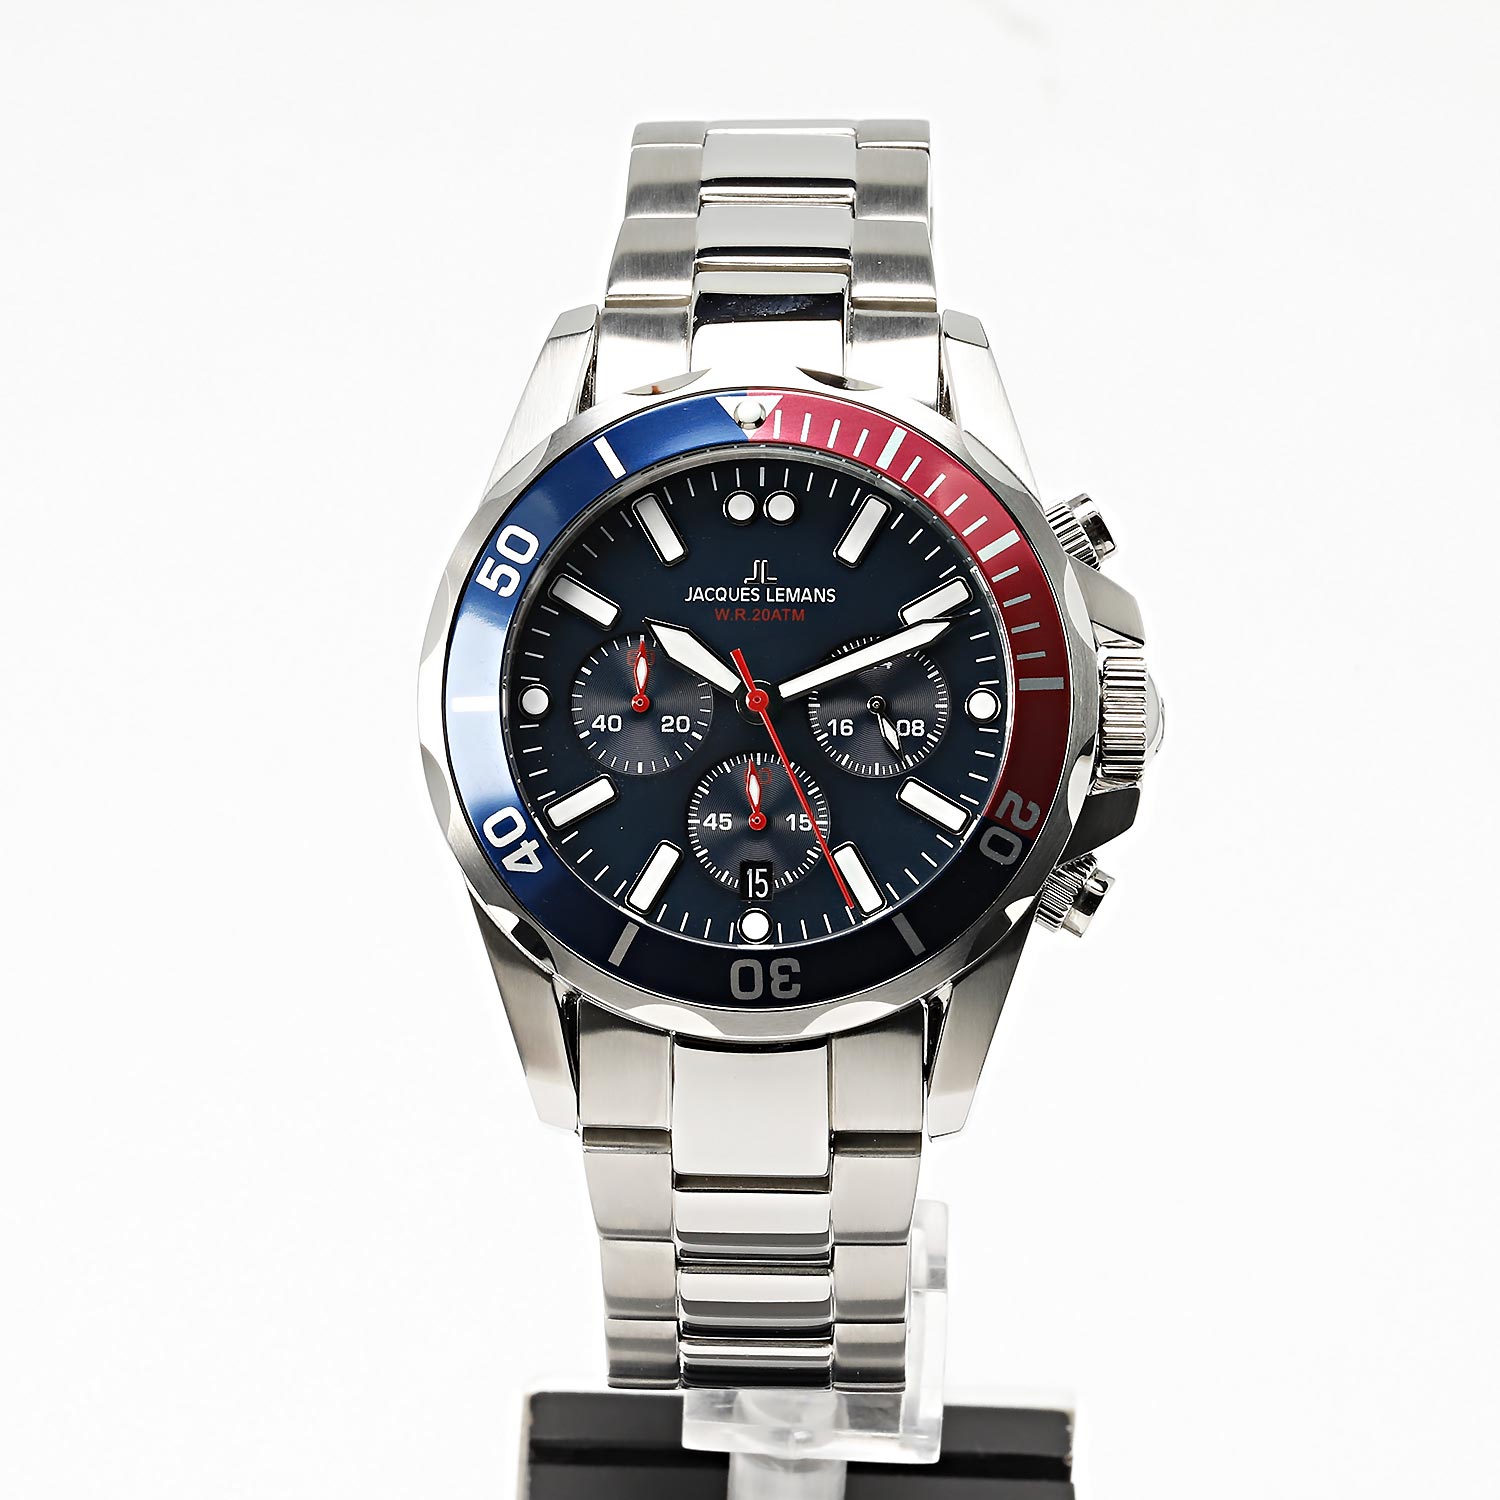 Jacques в интернет-магазине Lemans — 1-2091G часы инструкция, описание фото, лучшей по цене, купить Наручные AllTime.ru характеристики,